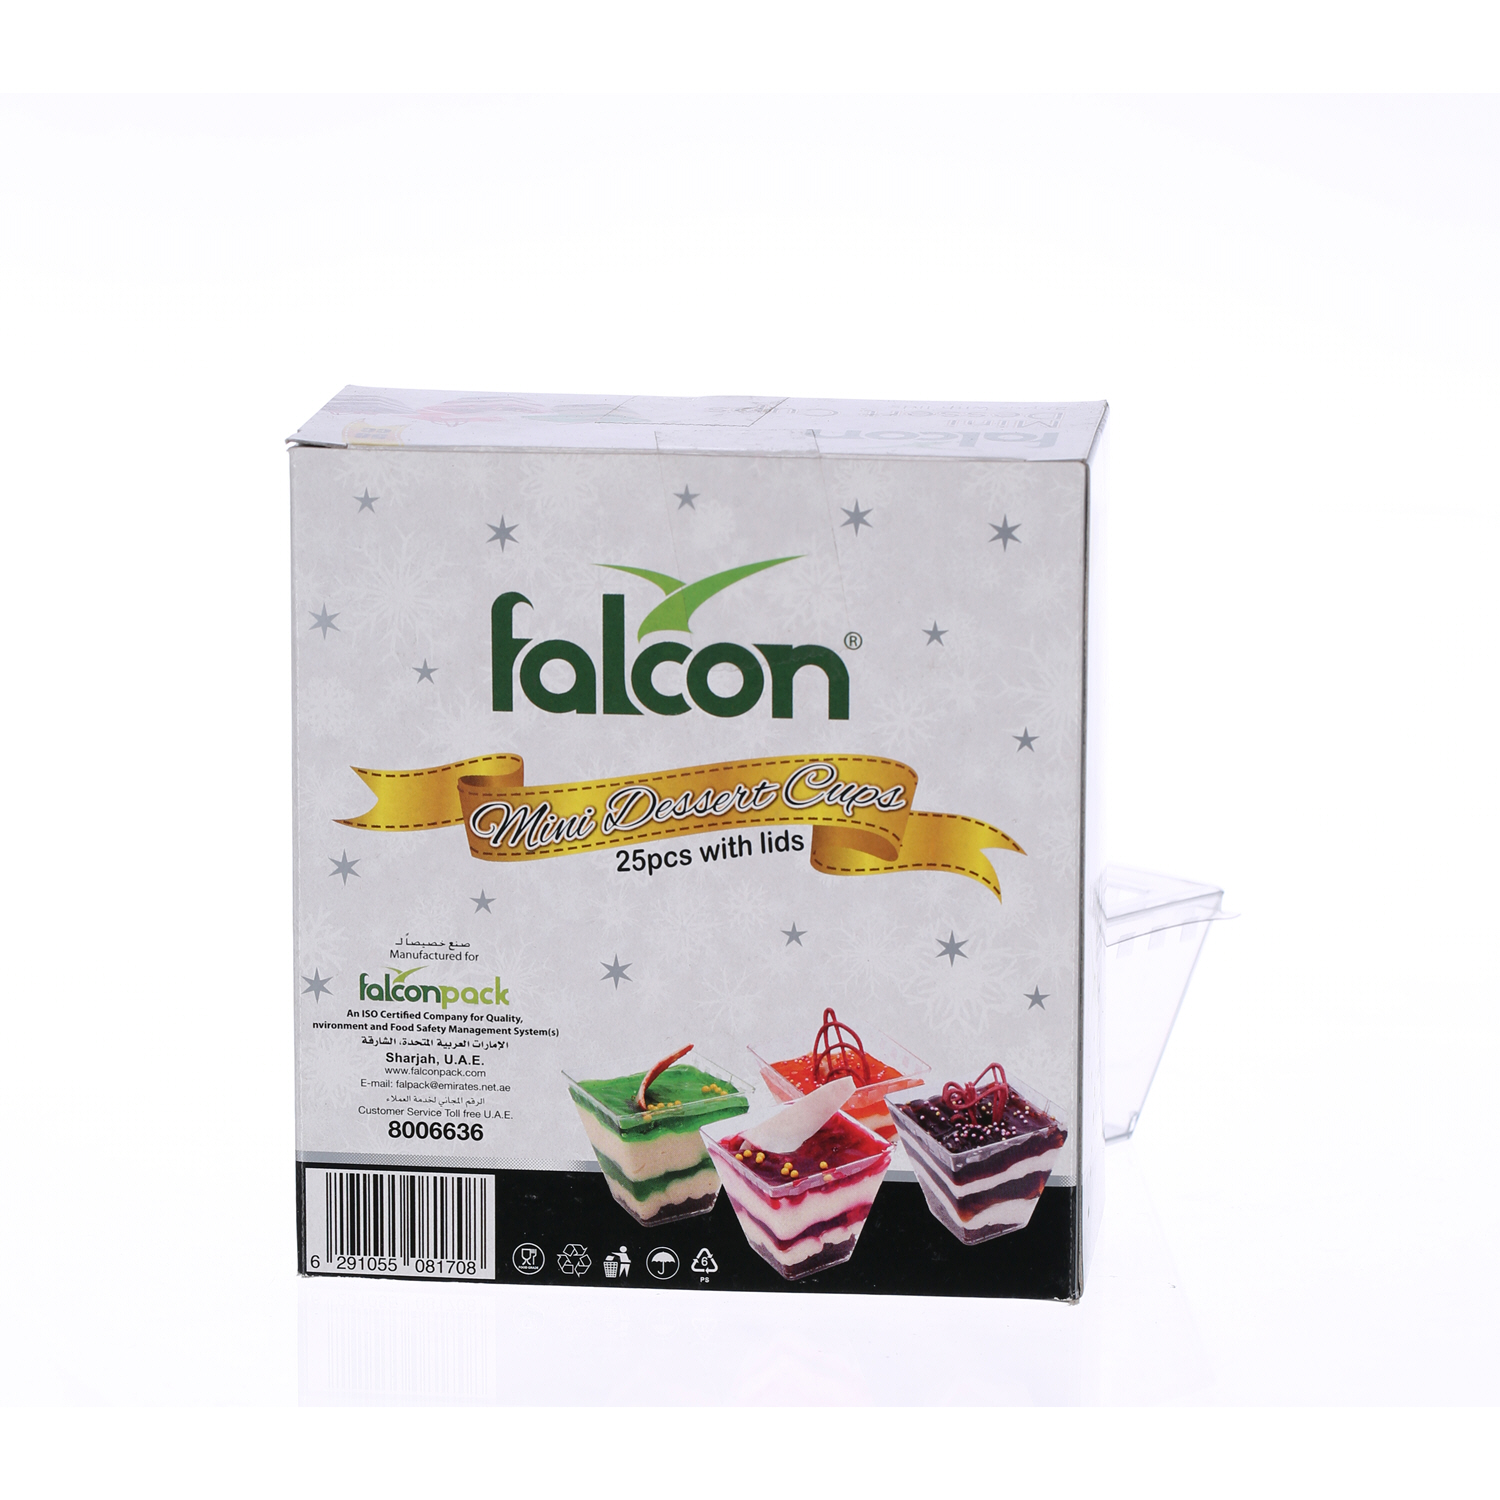 Falcon Mini Dessert Square Cup Crystal 58 ml